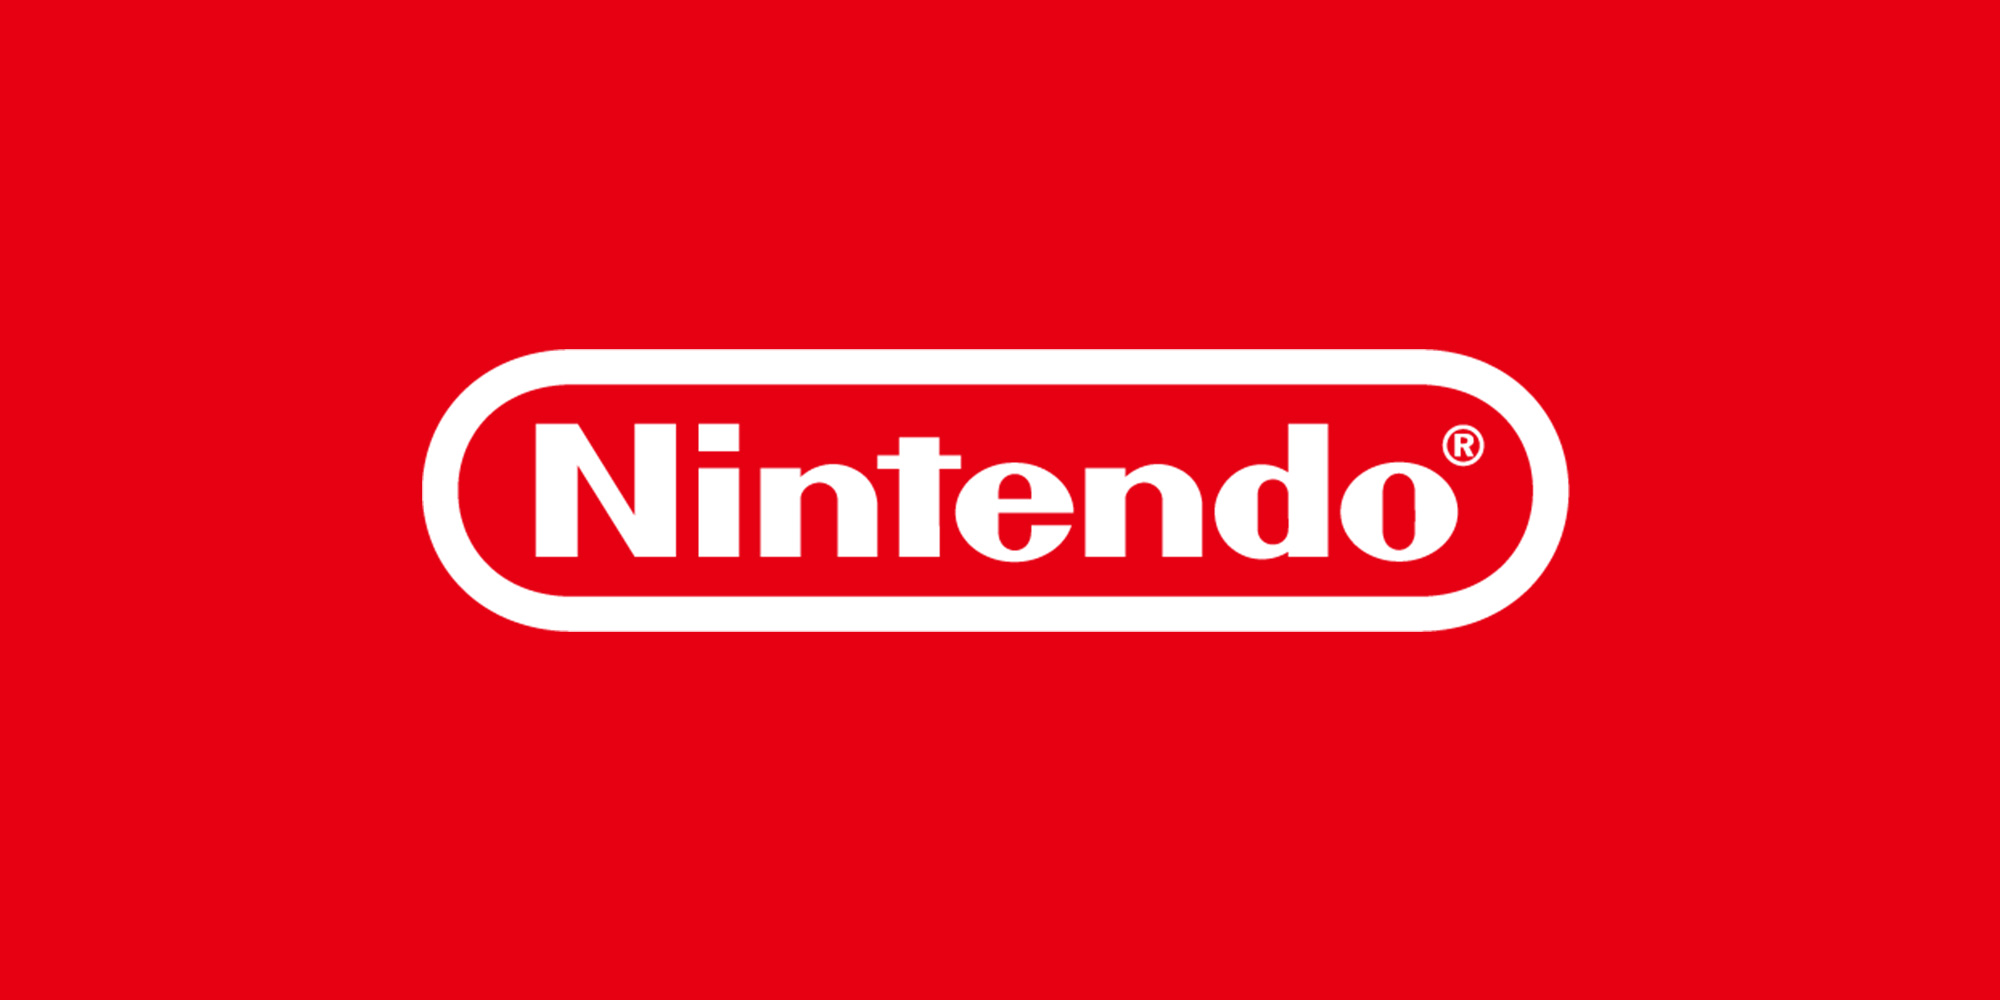 Nintendo: La proprietà intellettuale oltre ai giochi